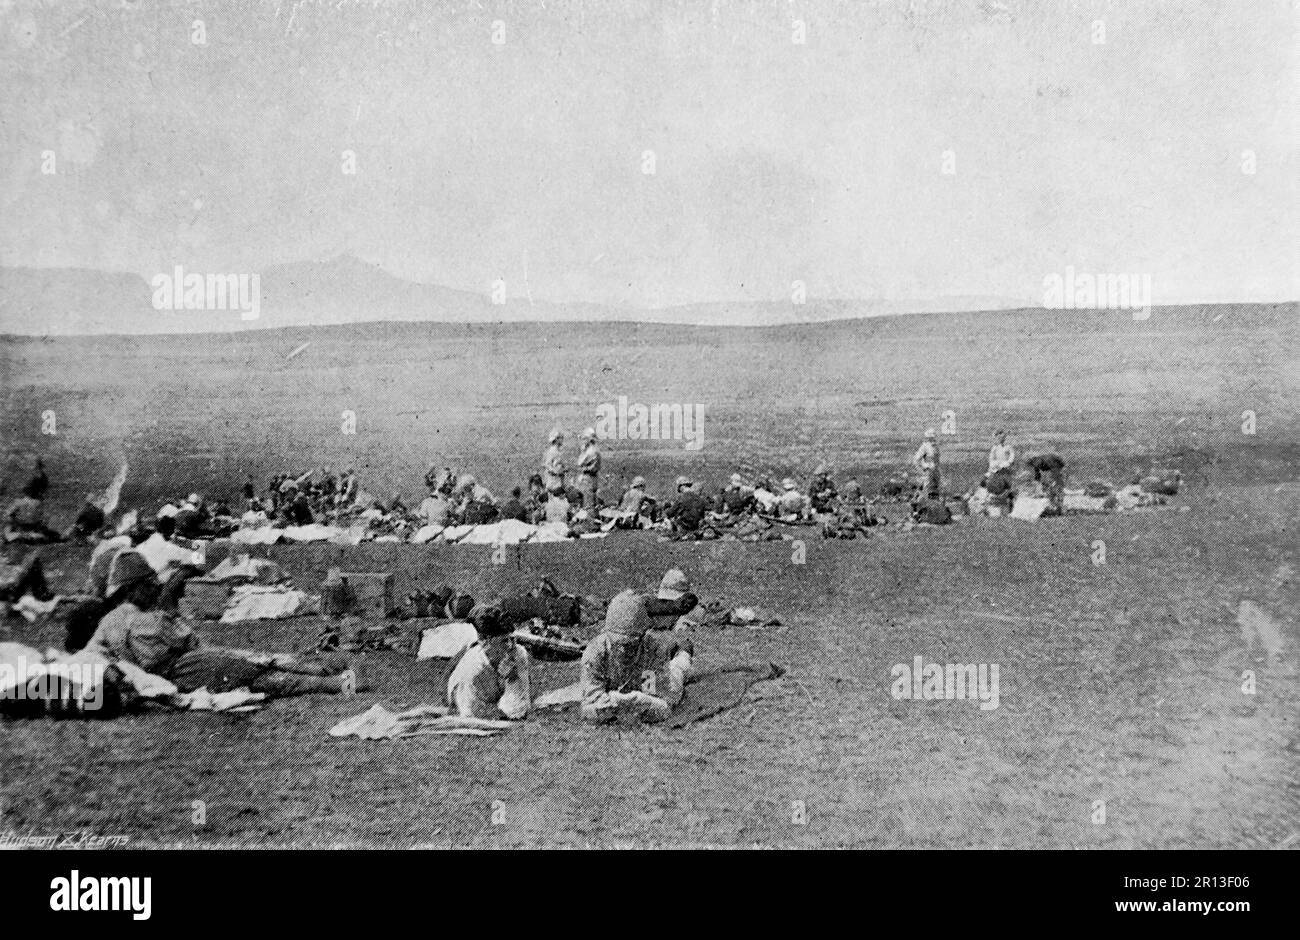 La guerre des Boers, également connue sous le nom de Seconde Guerre des Boers, la guerre sud-africaine et la guerre des Anglo-Boers. Cette image montre : le champ de bataille de Dundee : bivouac des 2nd Fusiliers royaux de Dublin. Photo originale de “Marine et Armée”, c1899 Banque D'Images